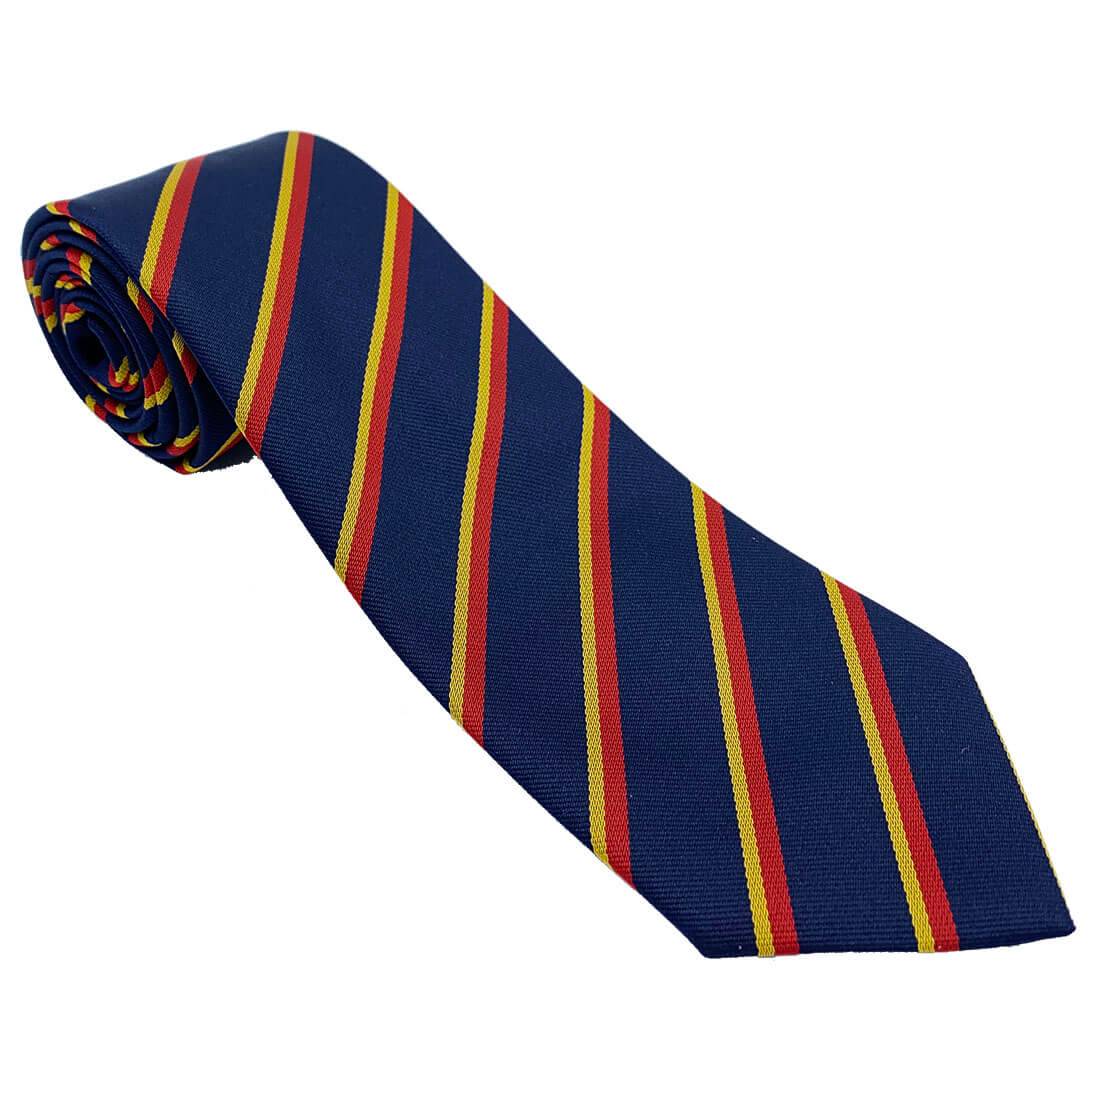 REME Regimental Polyester Tie - John Bull Clothing